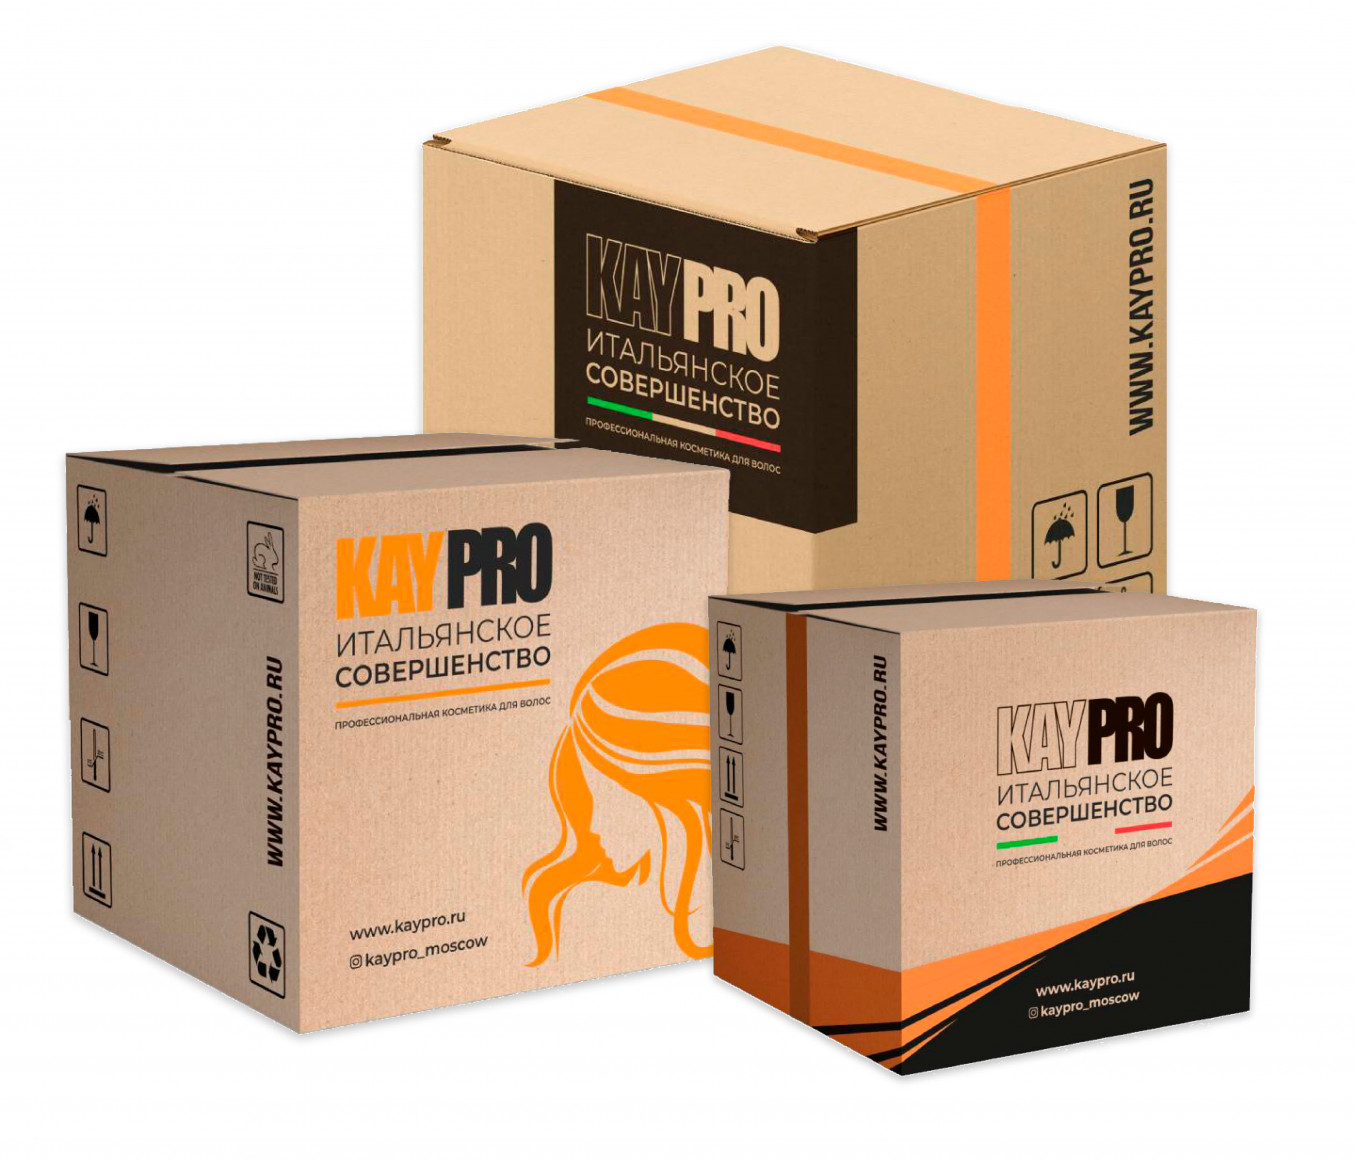 Conception d'emballages logistiques pour les produits de la marque italienne KAYPRO